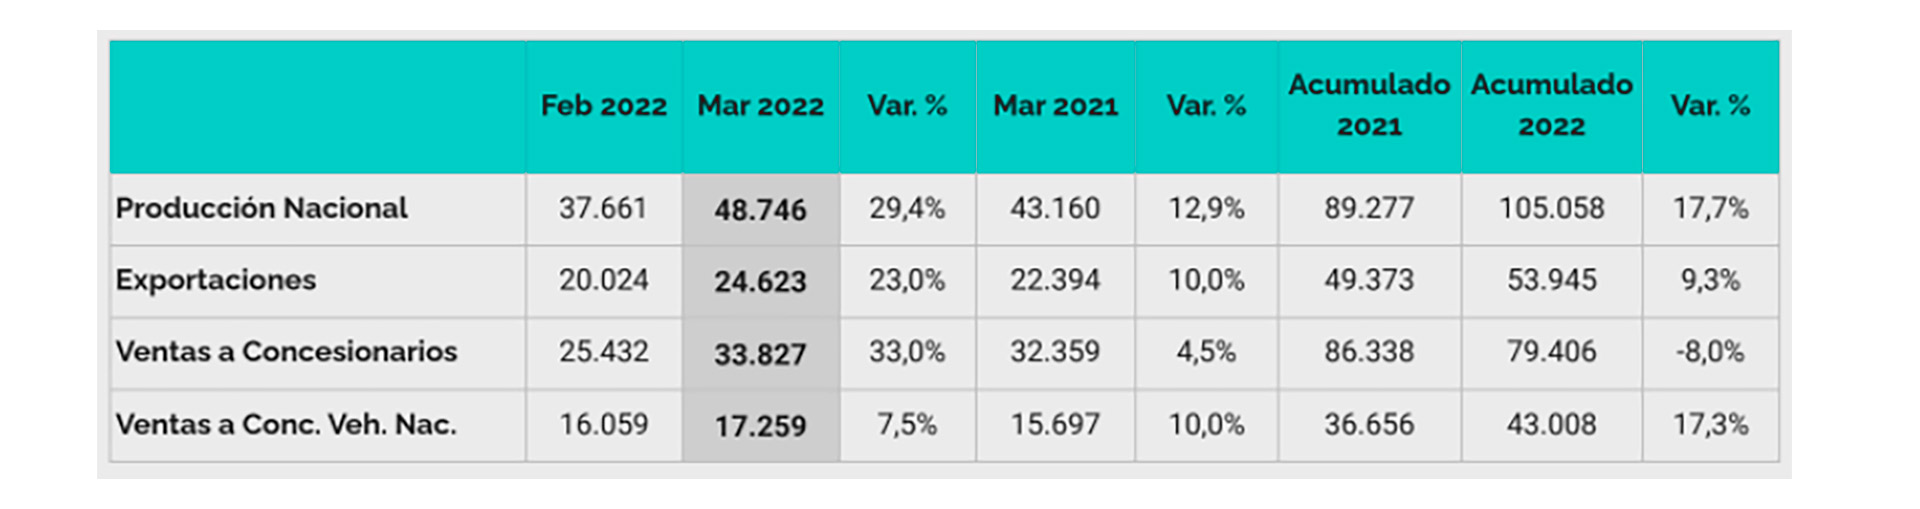 Datos de la industria automotriz a marzo de 2022
Fuente: Adefa